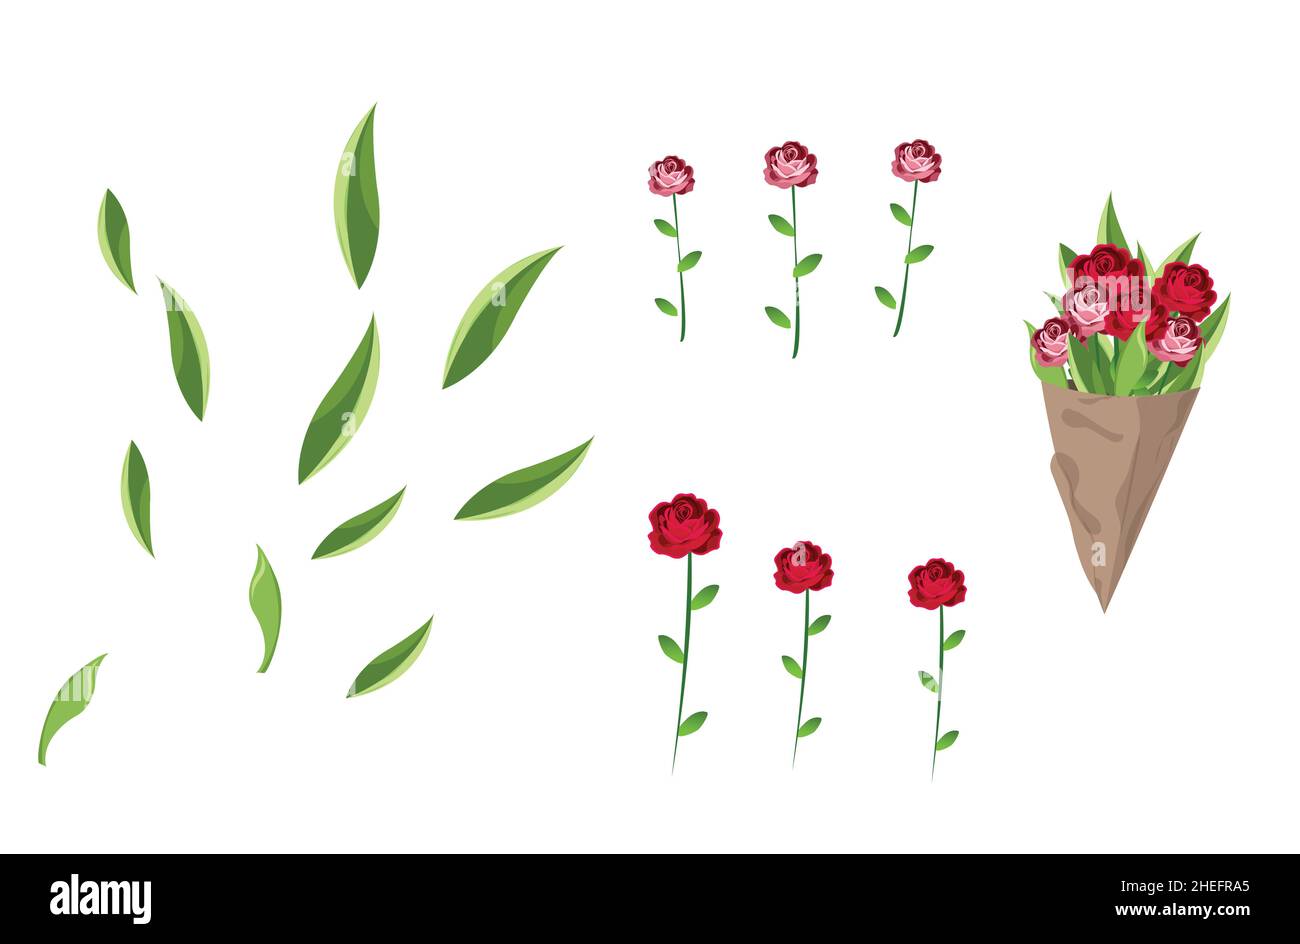 Bouquet de roses rouges sur fond blanc.Arrangement de fleurs.Carte de vœux et invitation à un mariage, Saint-Valentin, Fête des mères et autres Illustration de Vecteur